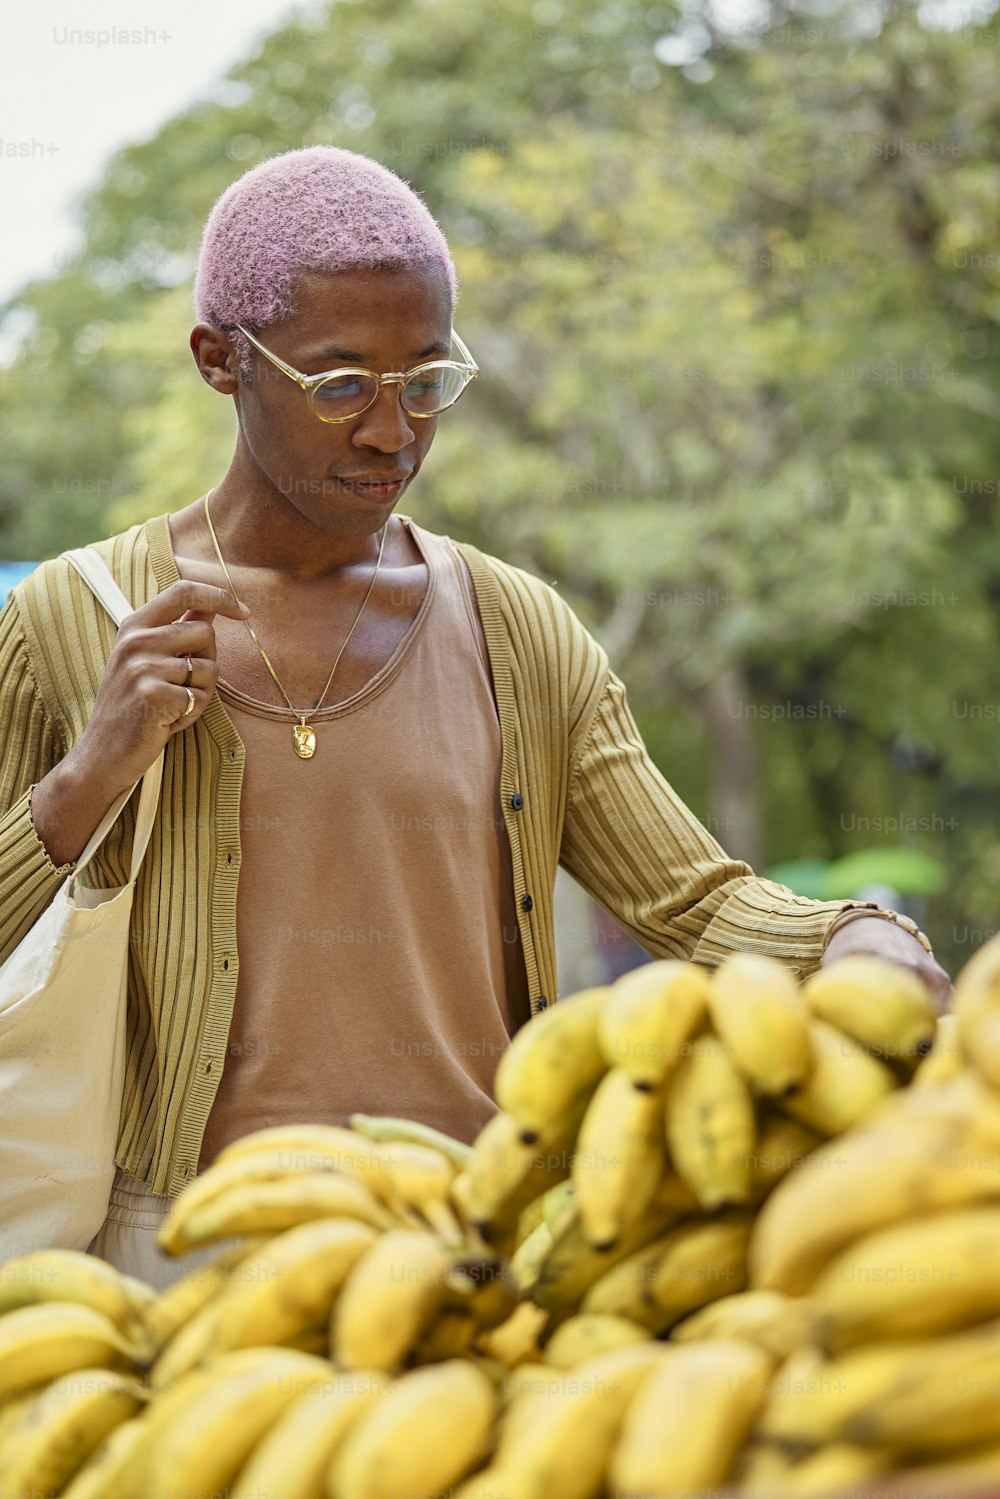 Un hombre parado frente a un montón de plátanos